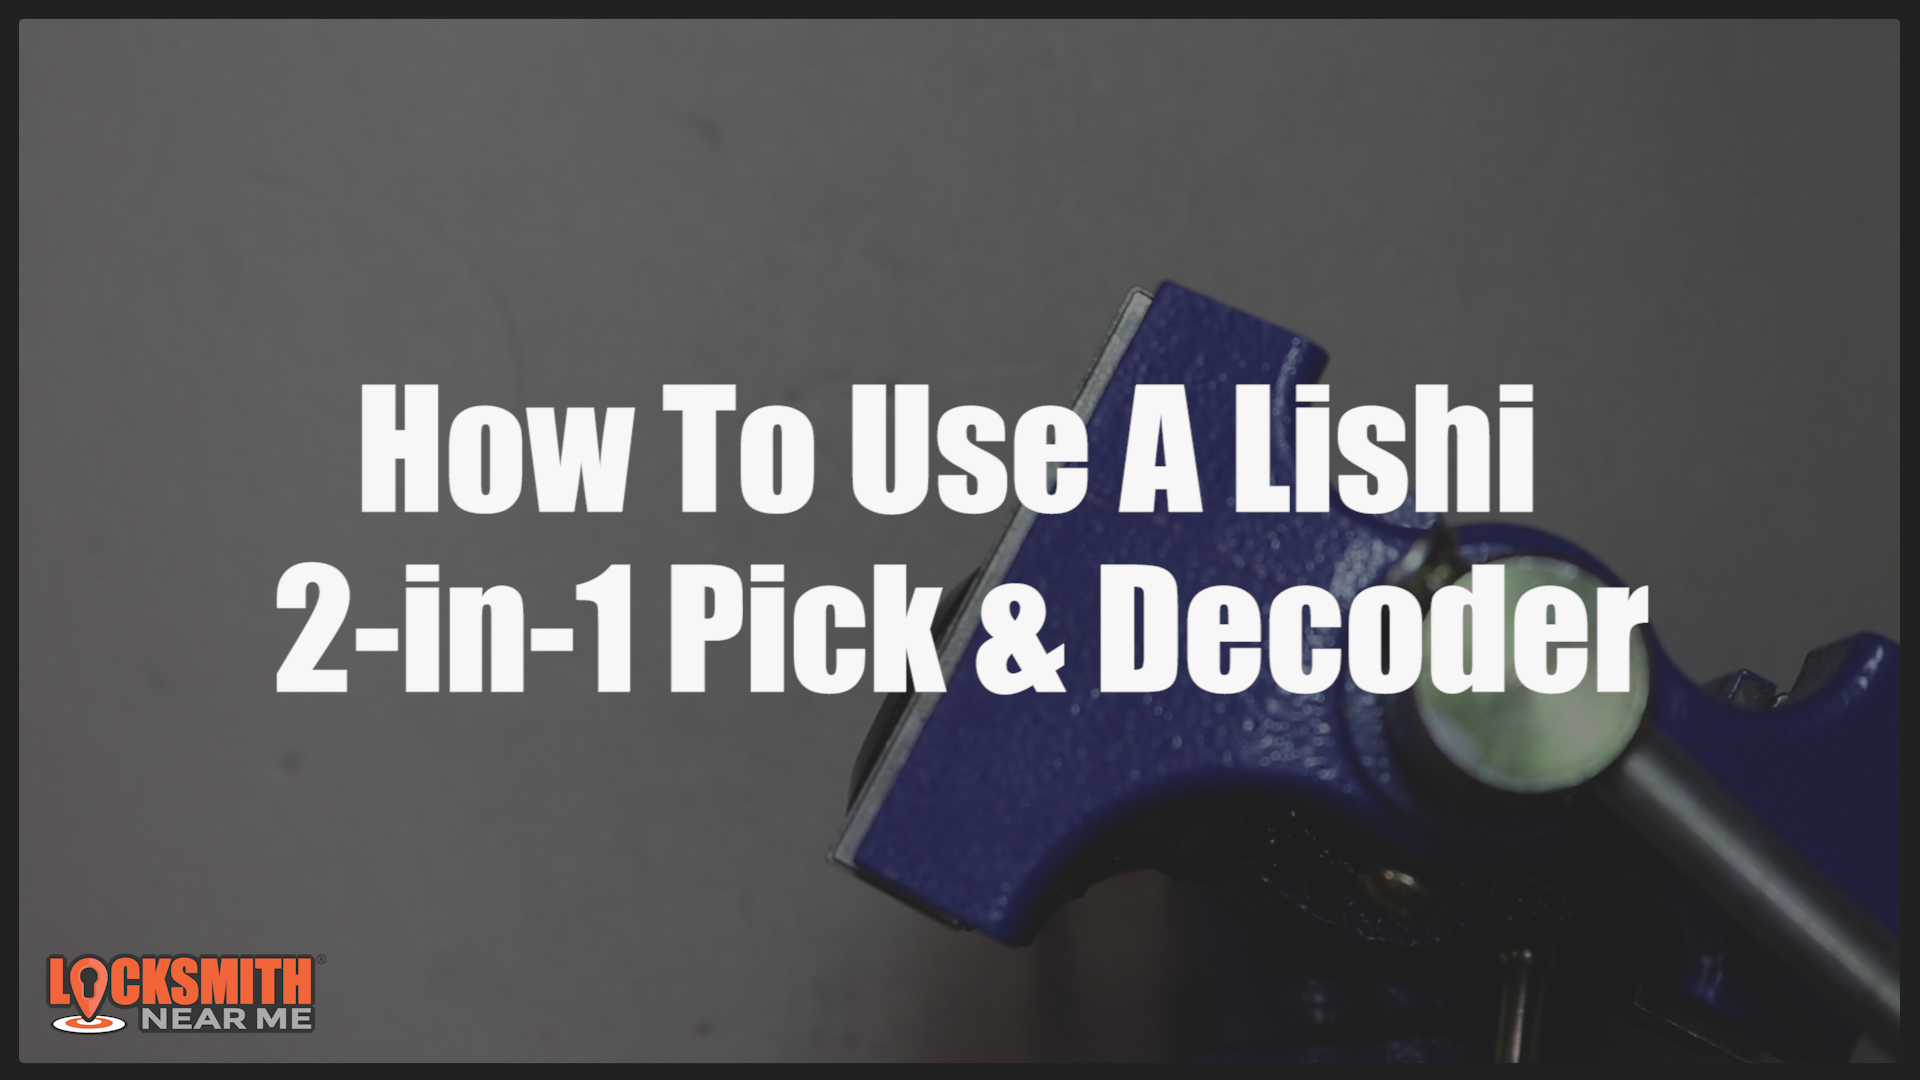 How to use a Lishi